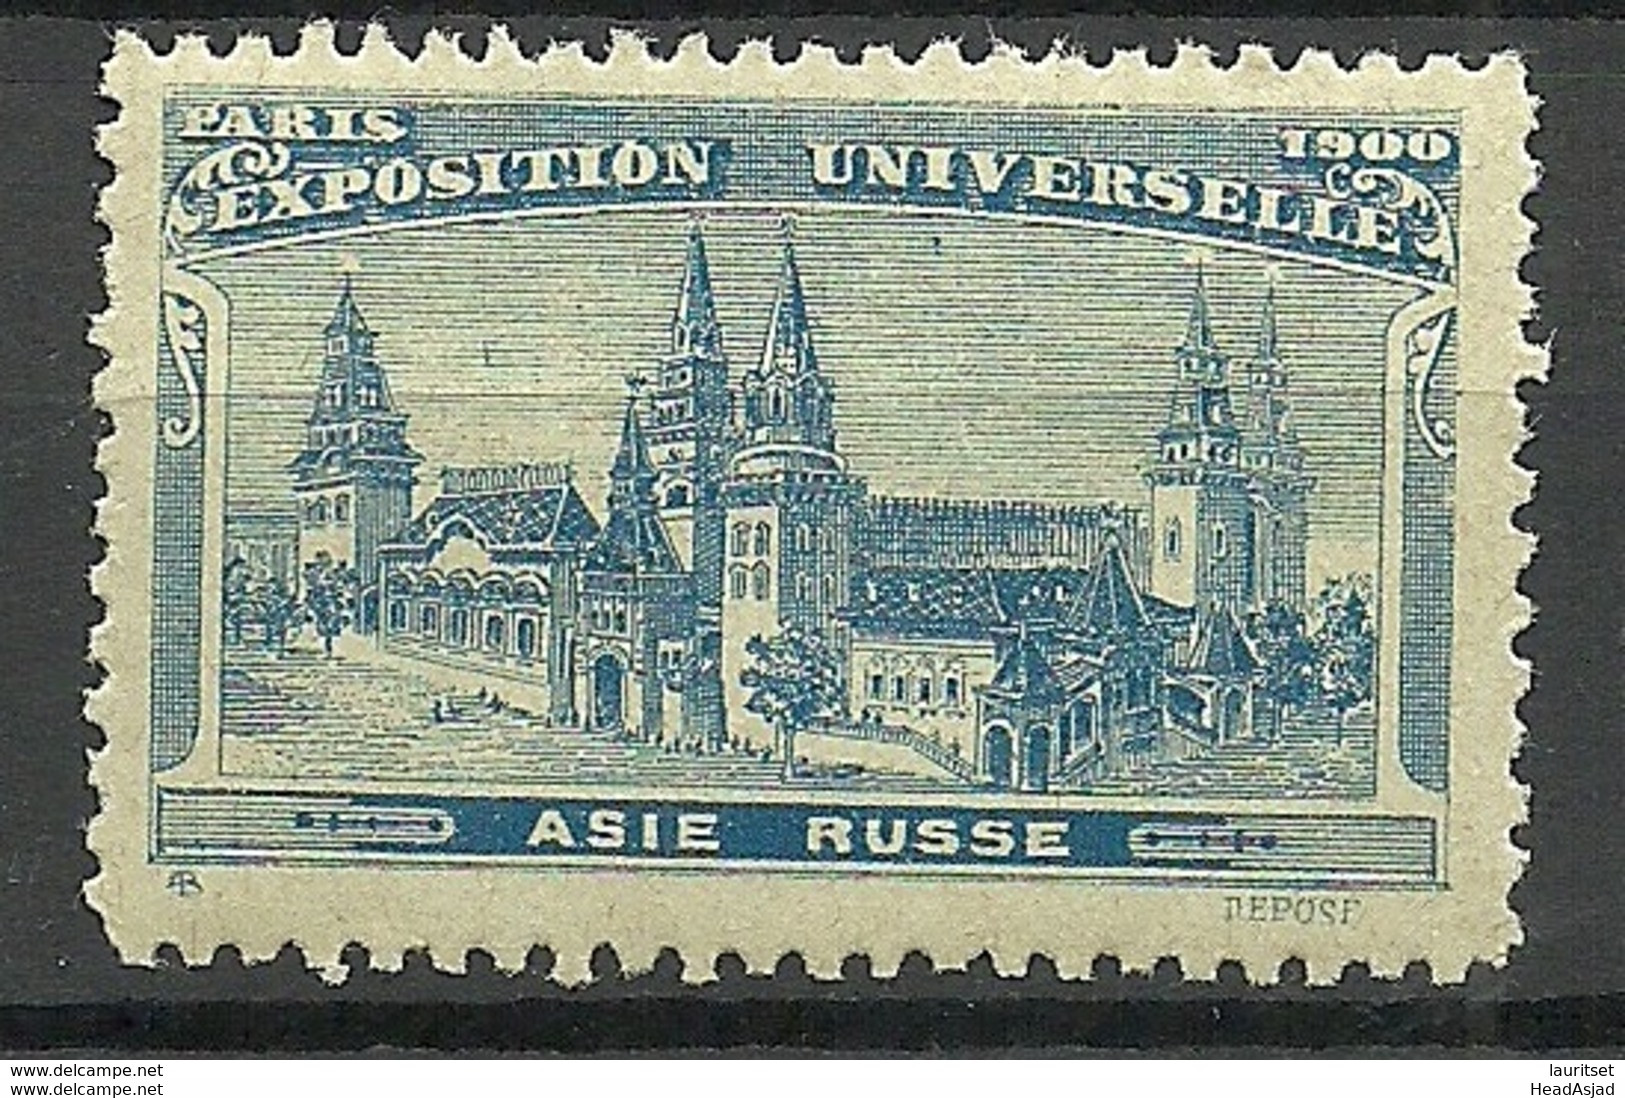 France 1900 EXPOSITION UNIVERSELLE Paris Asie Russe Pavillon MNH - 1900 – Parigi (Francia)